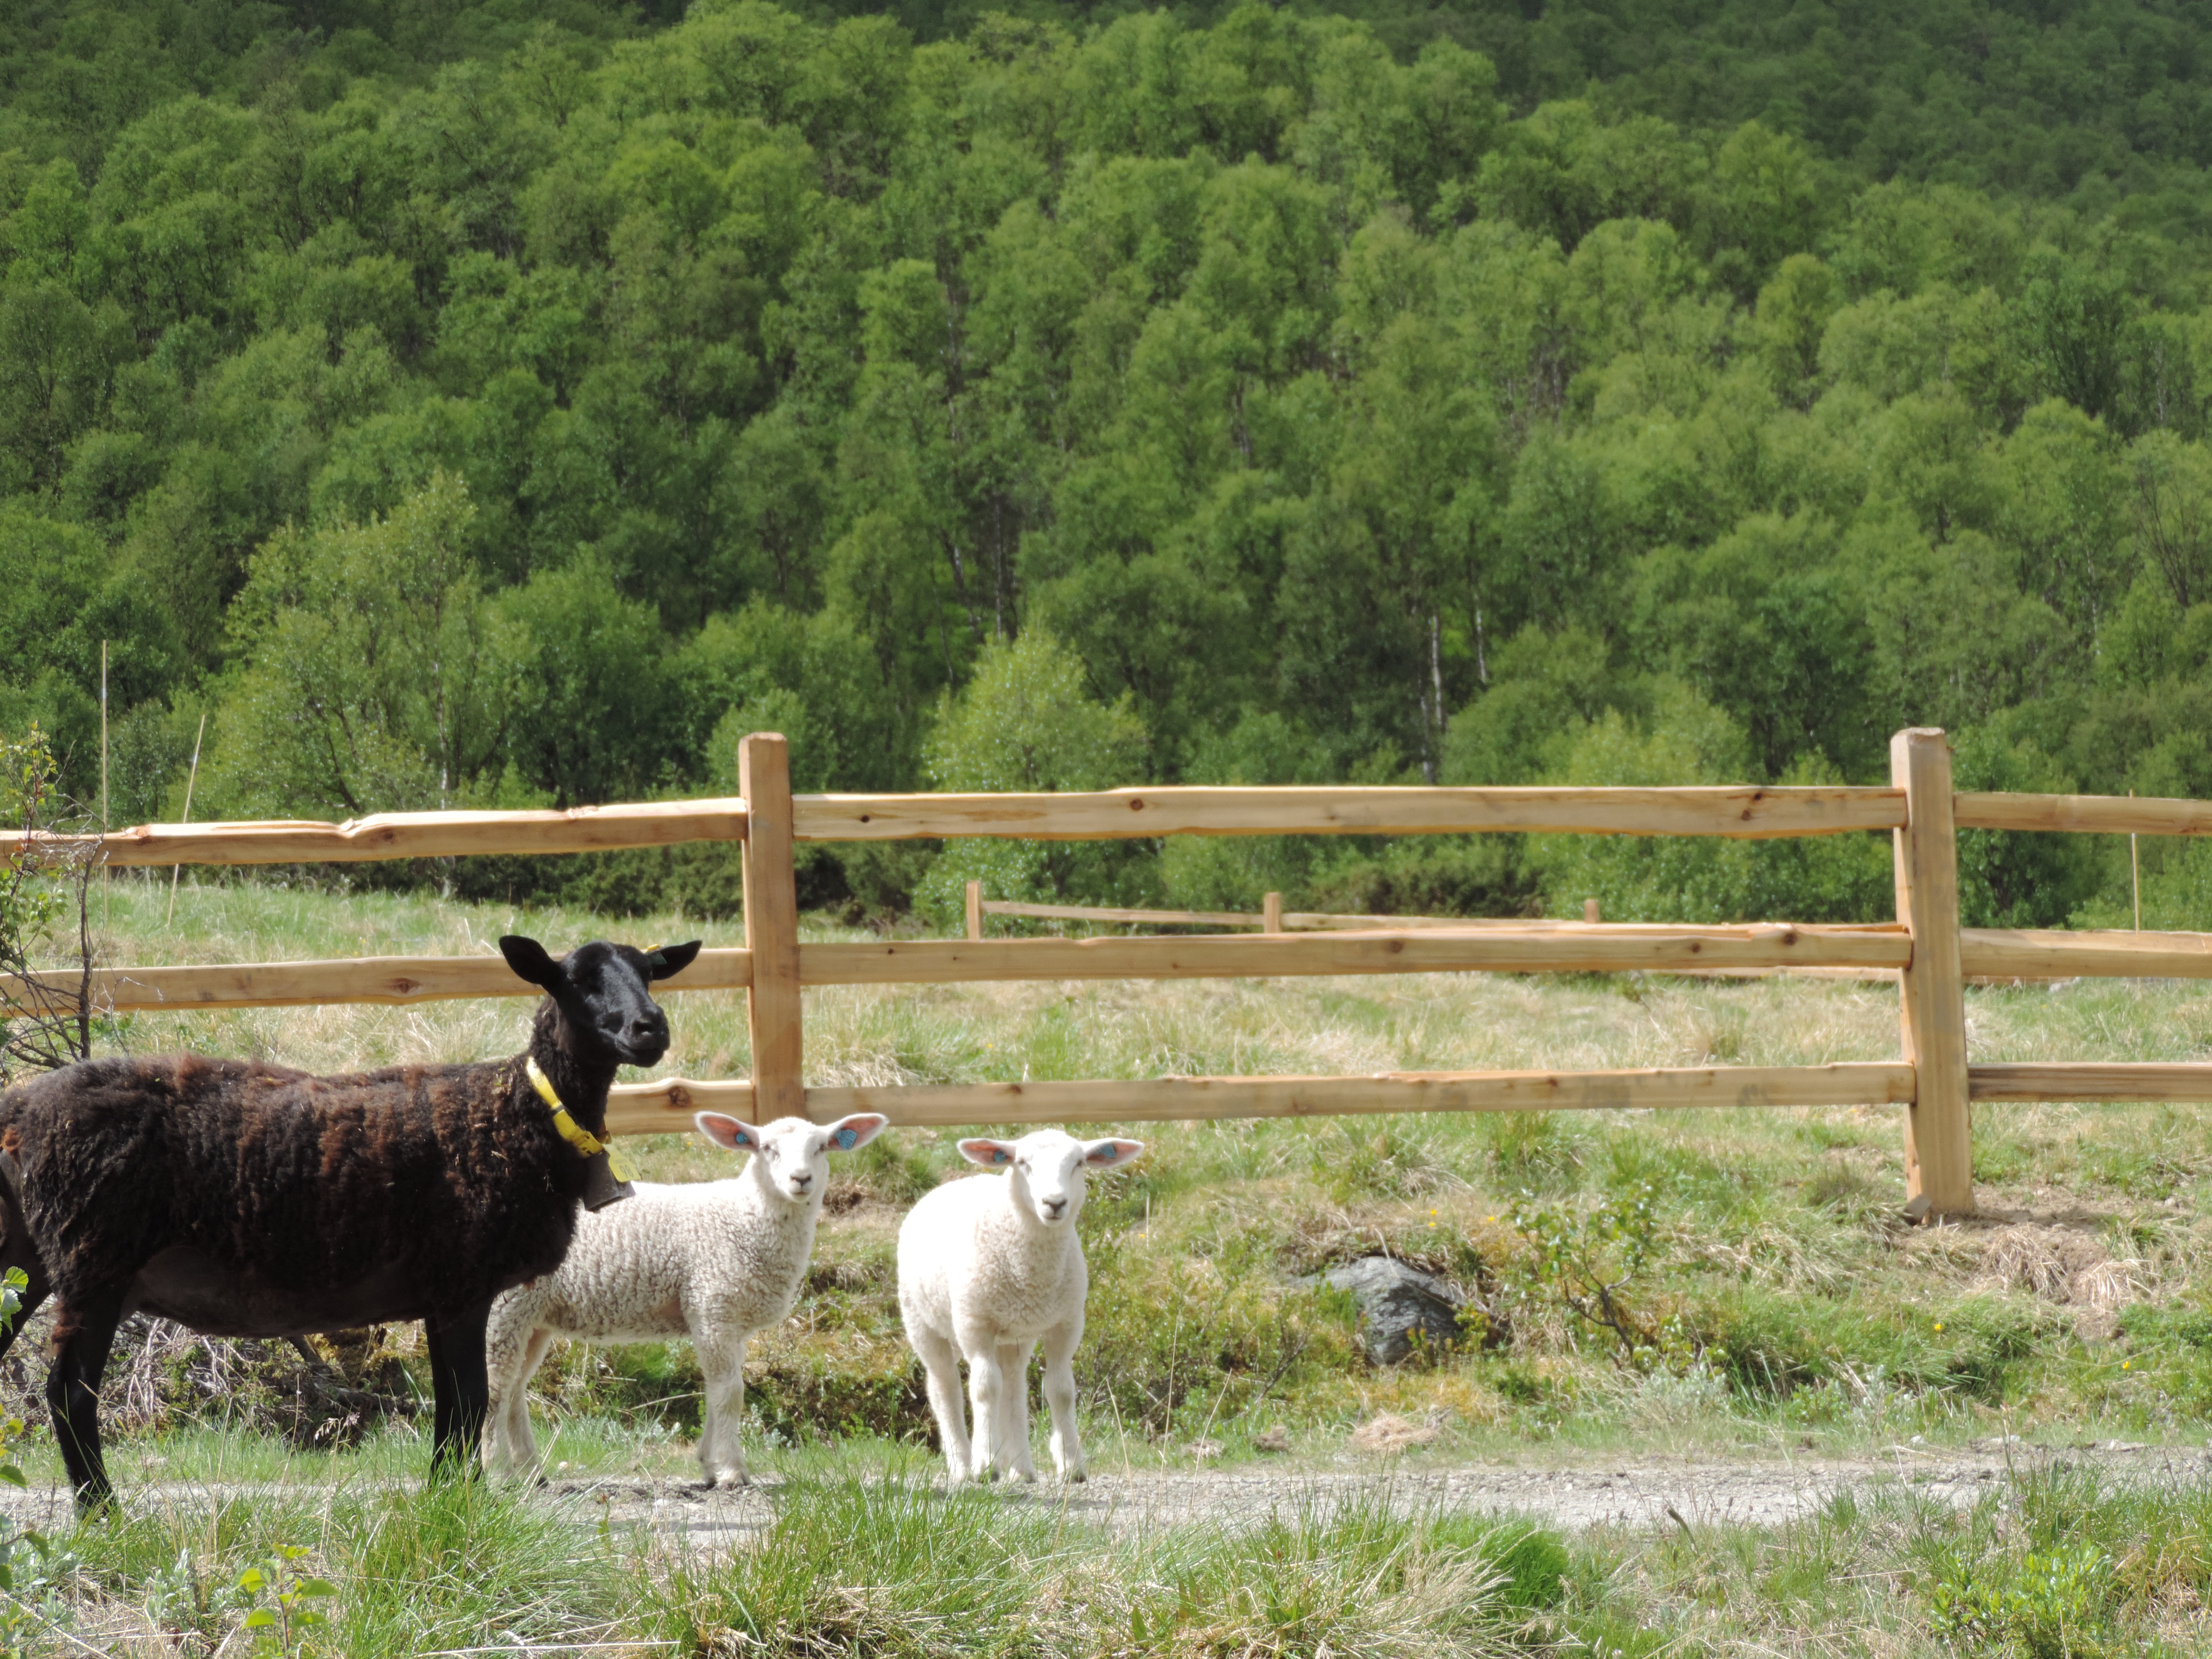 Ein schwarzes Schaf und zwei weiße Lämmer stehen vor einem rustikalen Lattenzaun aus Zedernholz.